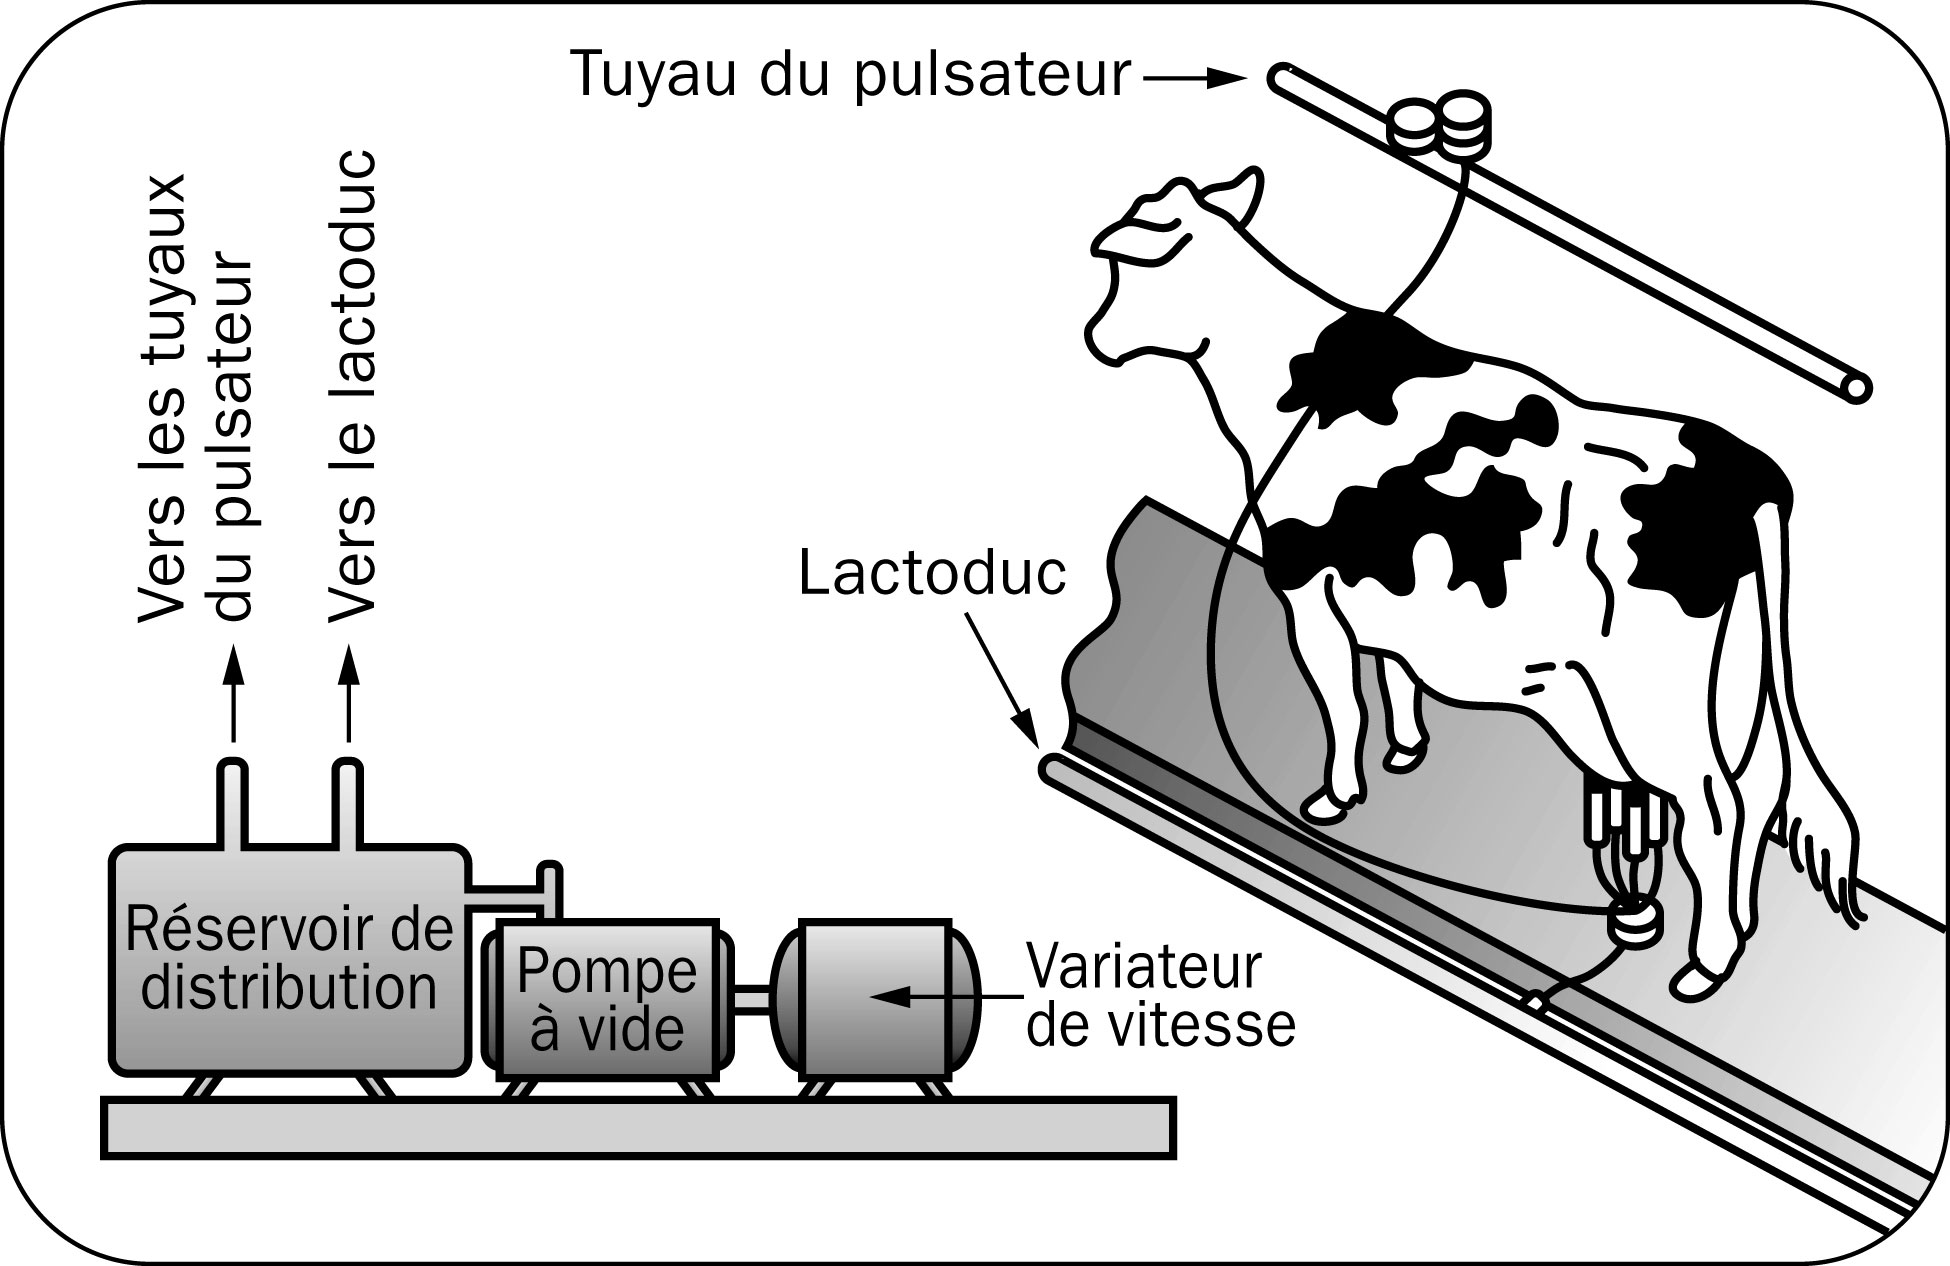 Dessin d'une vache durant la traite, illustrant le lactoduc, le tuyau du pulsateur, la pompe à vide et le réservoir de distribution.